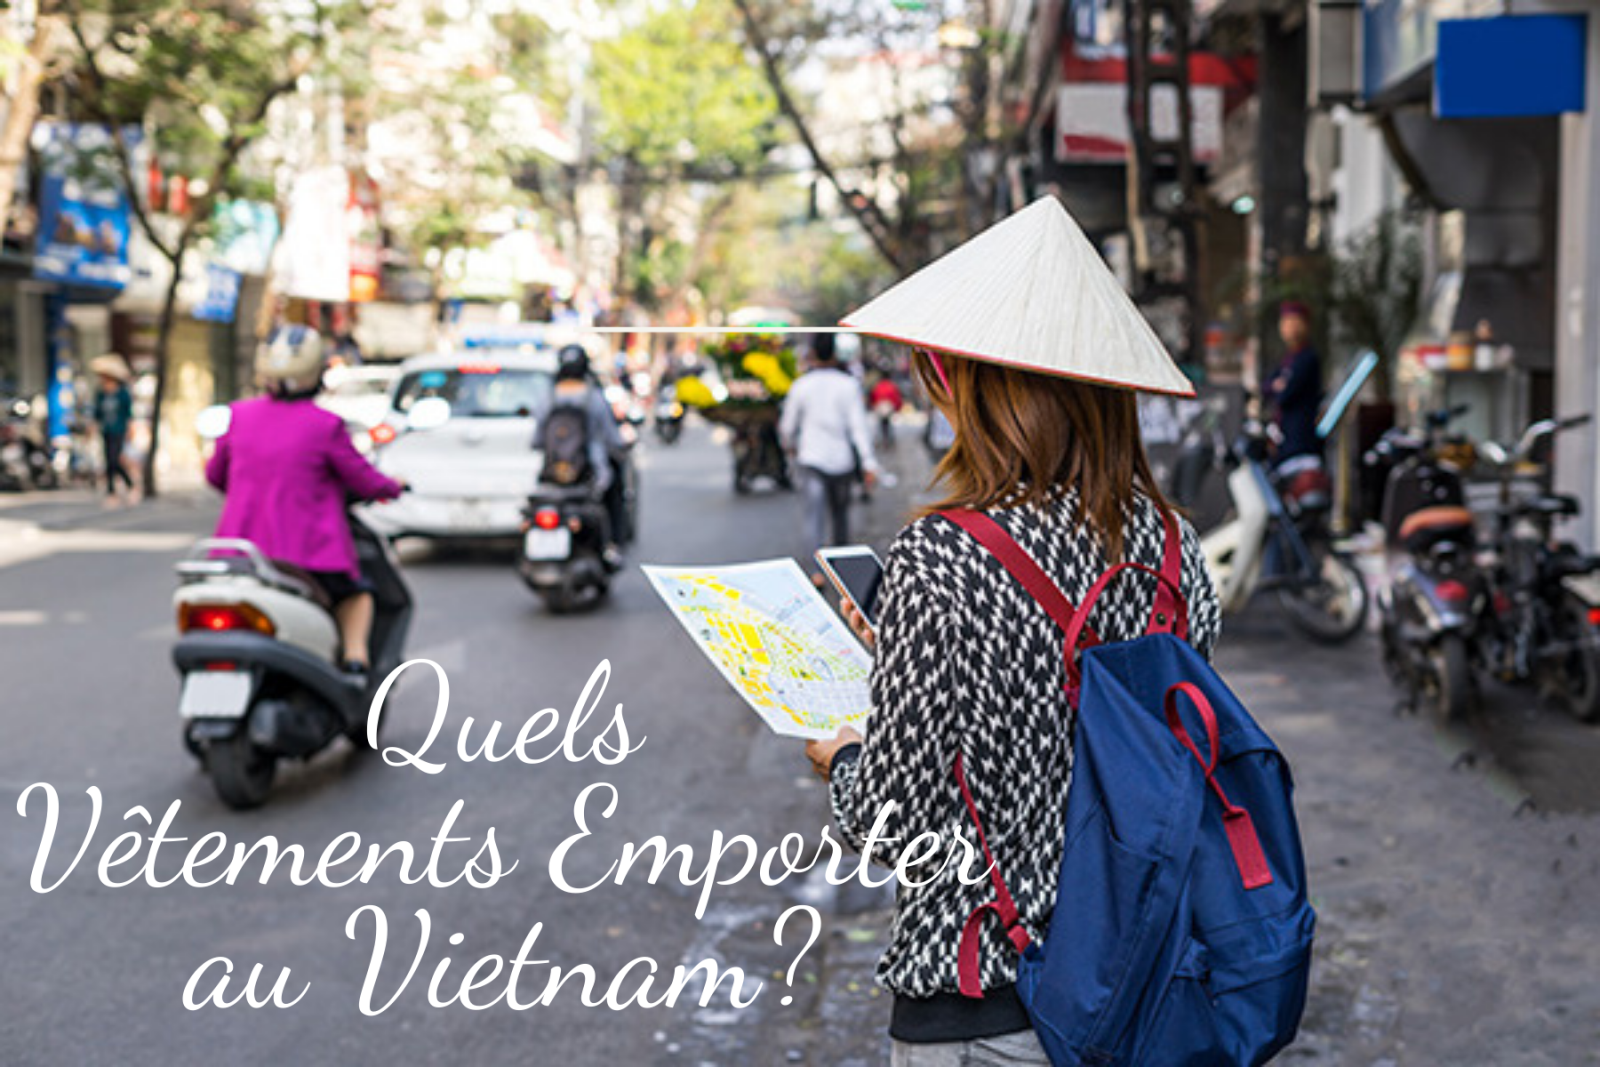 Quels Vêtements emporter et comment s'habiller correctement au Vietnam?